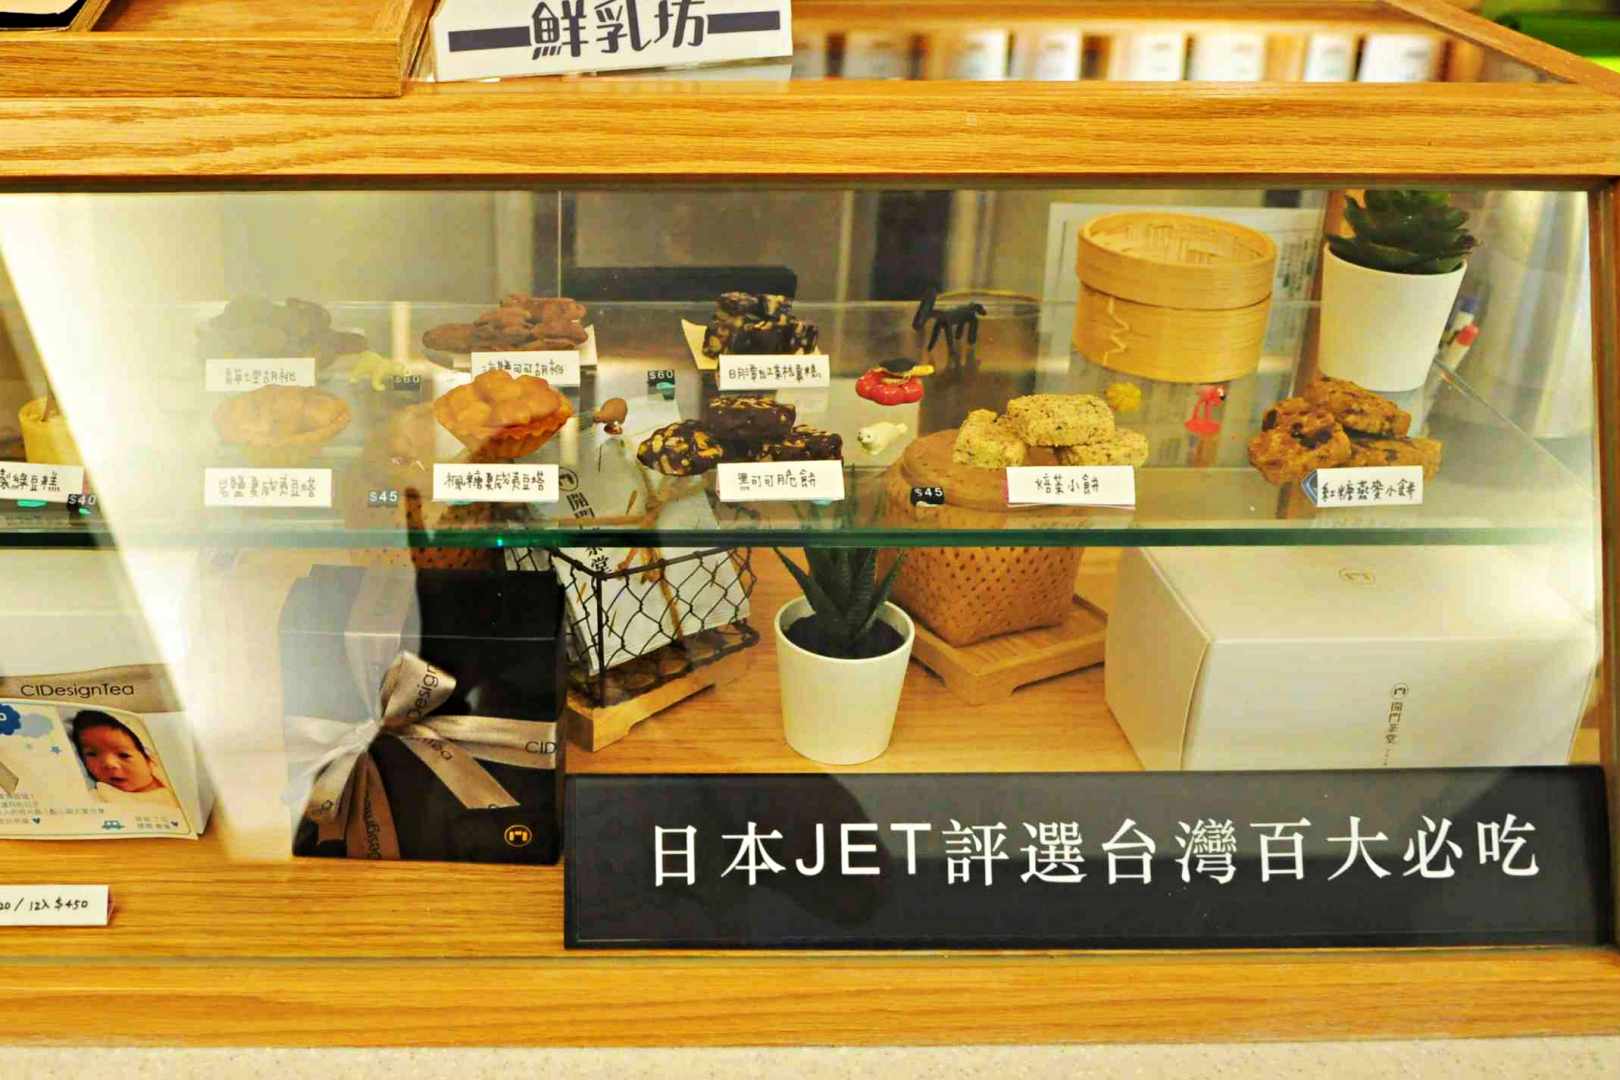 民生社區美食, 台北小巨蛋, 開門茶堂, 開門設計